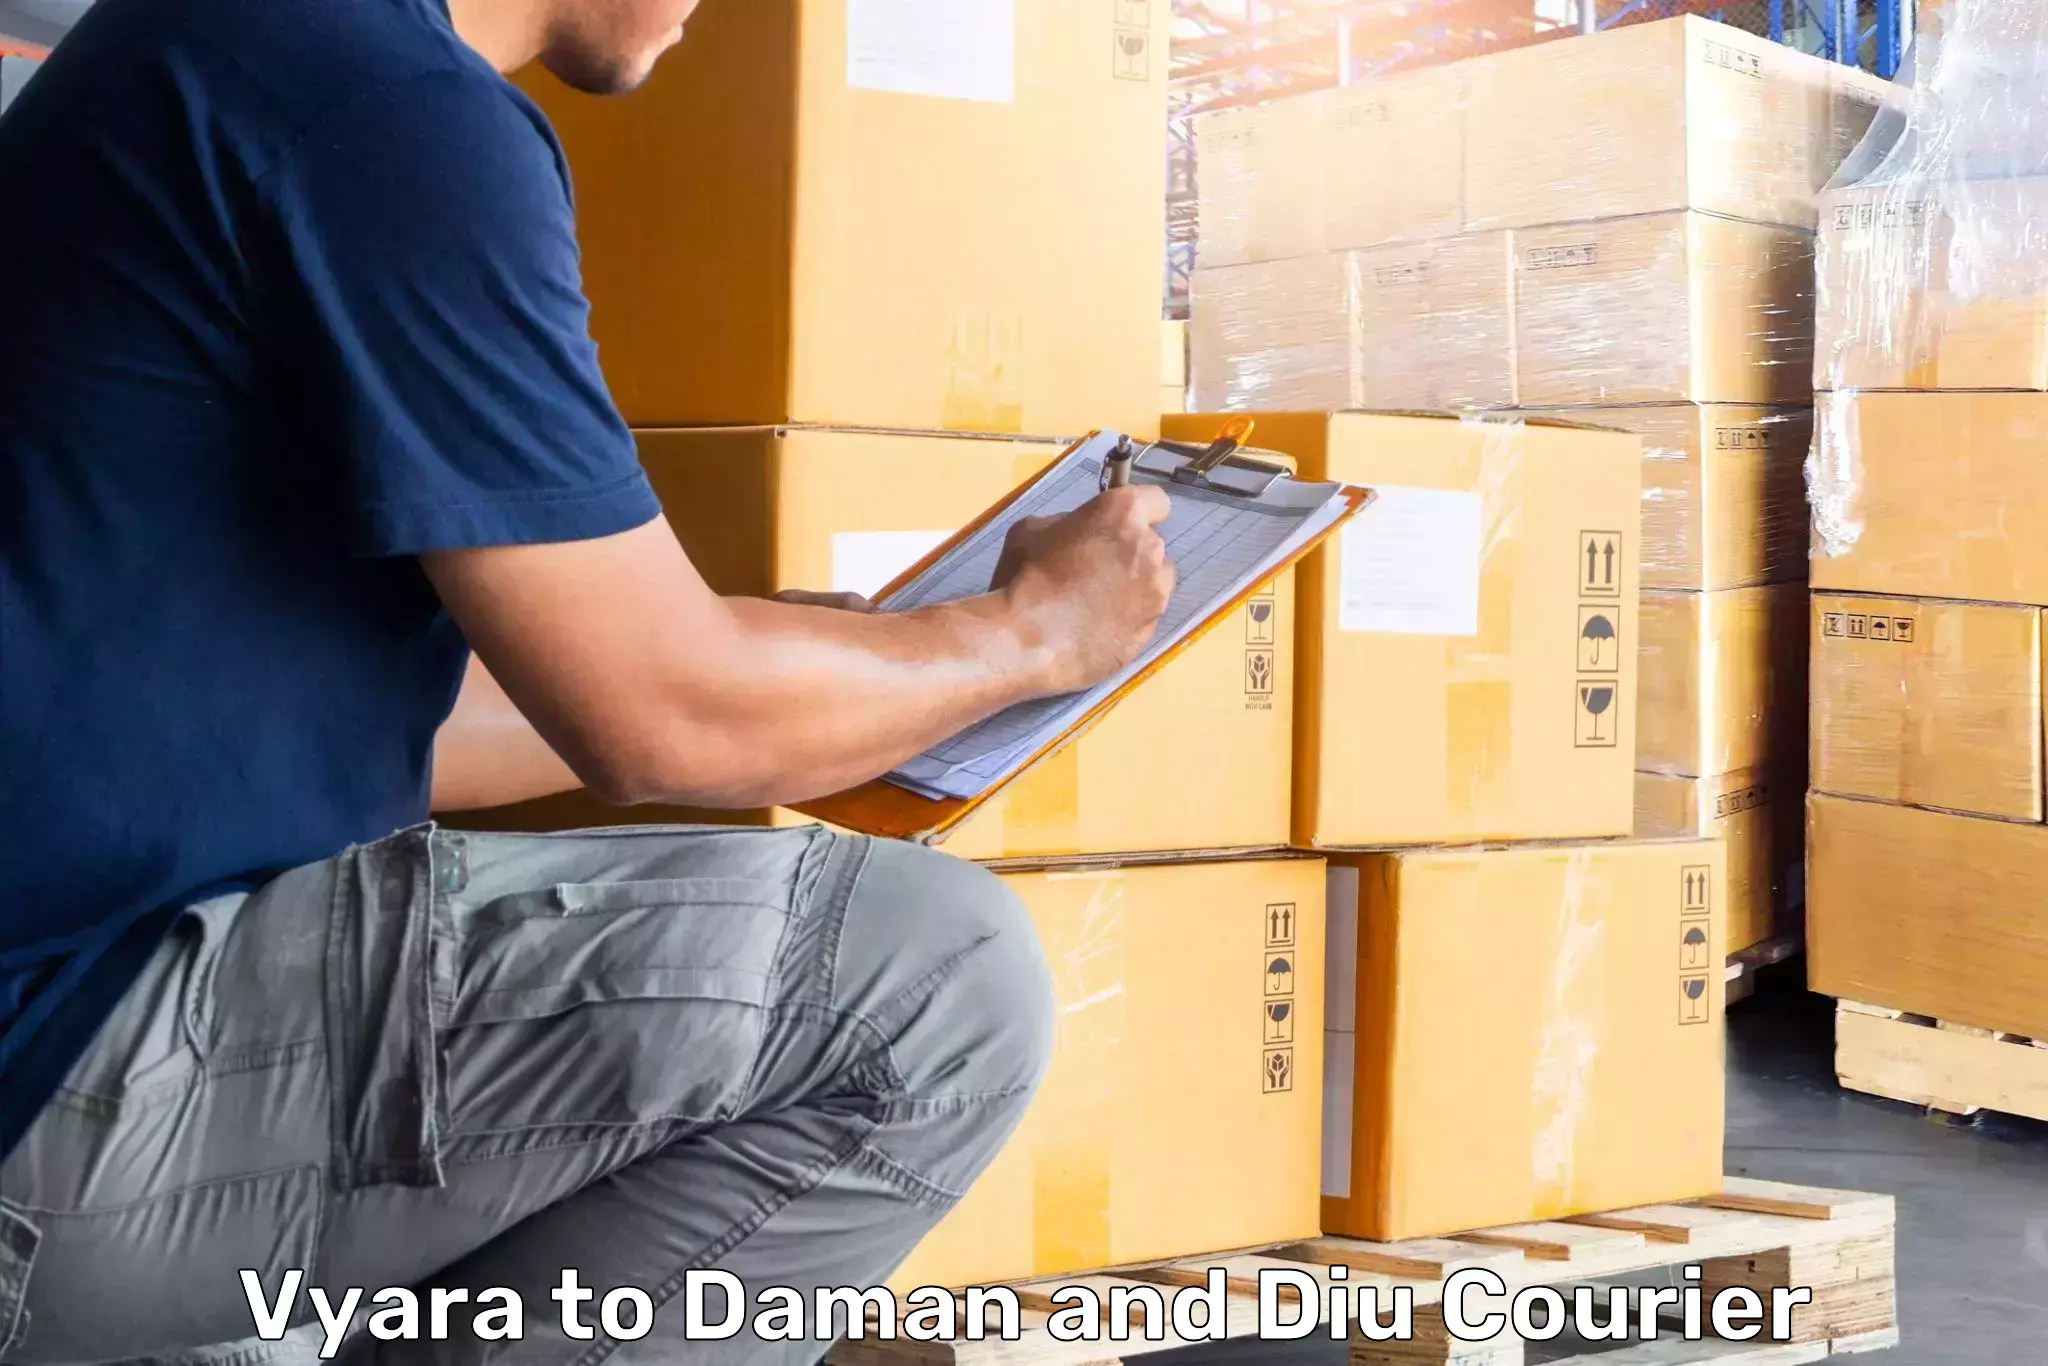 Baggage delivery optimization Vyara to Daman and Diu